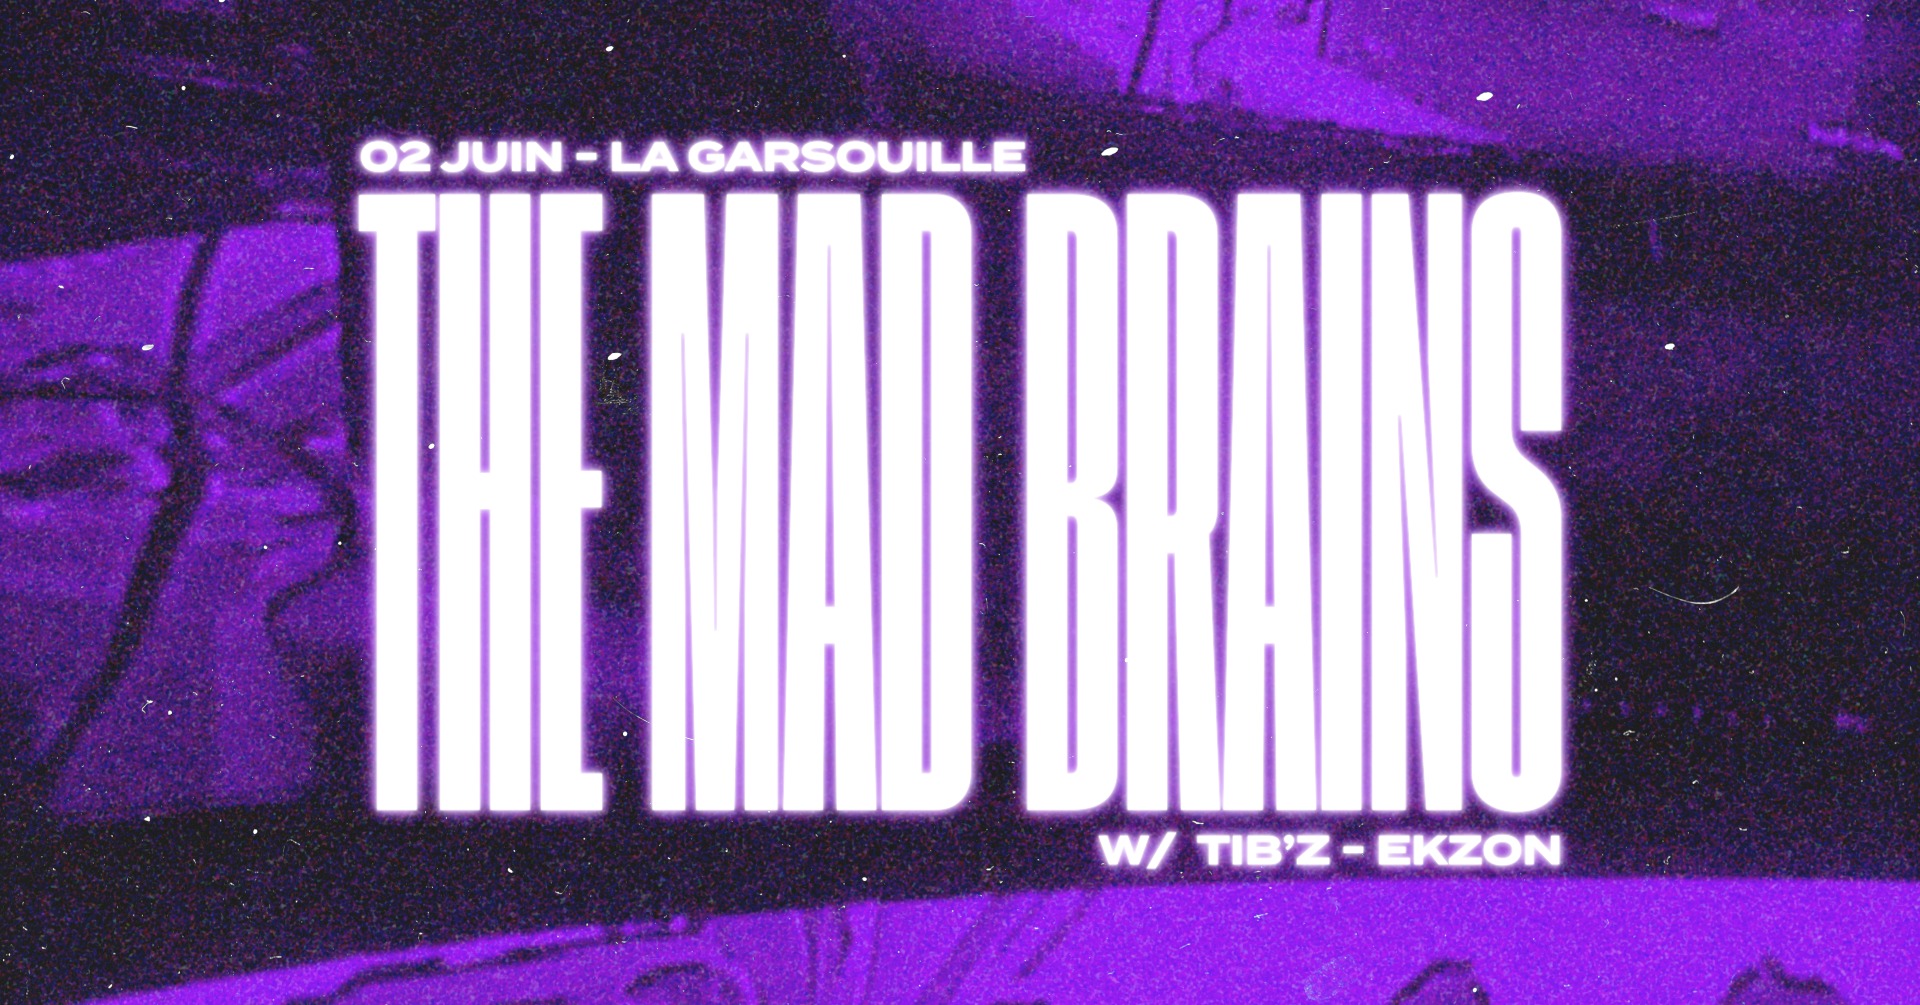 Garsouille x M.A.D Brains, évènement propulsé par M.A.D Brains, qui aura lieu le 2 juin 2023